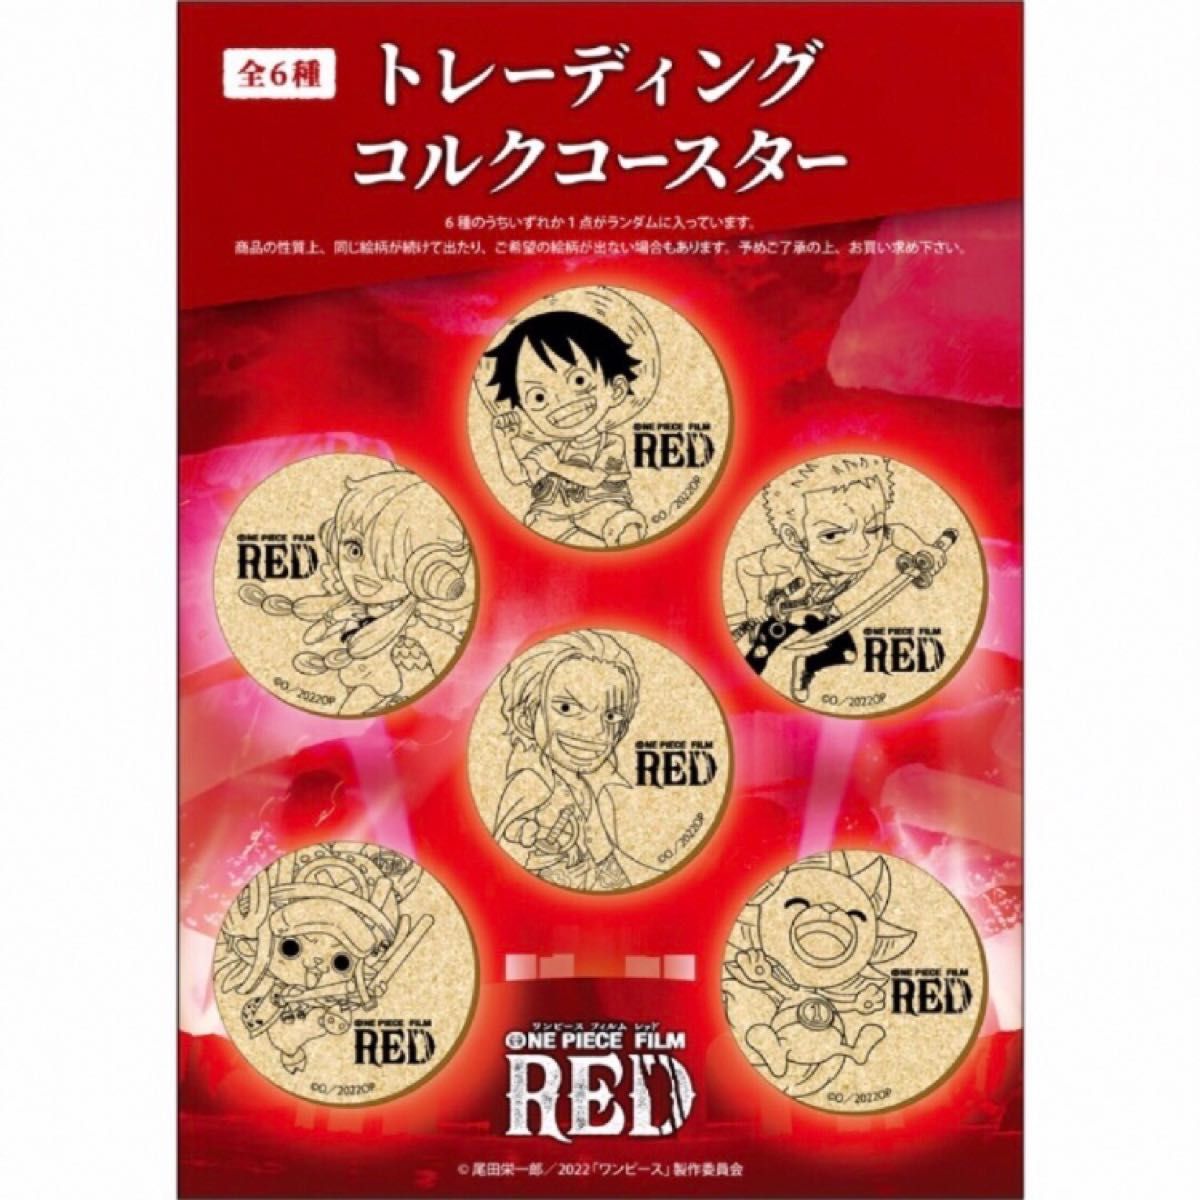 ONE PIECE FILM RED トレーディングコルクコースター ワンピース ゾロ レッド 映画 東映 フジテレビ カフェ